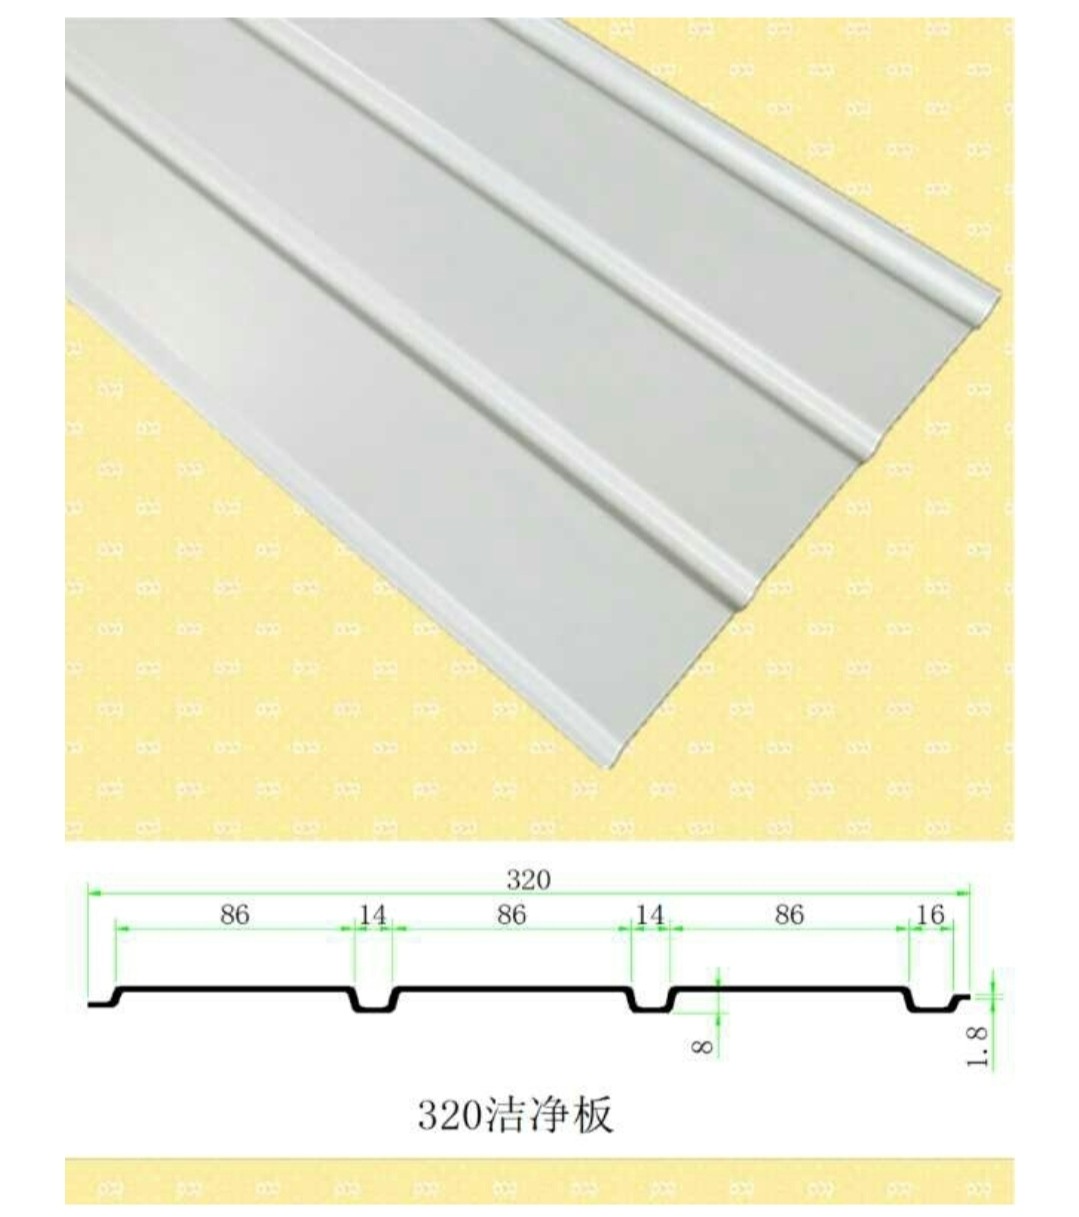 UPVC吊顶板，也叫做防腐板、洁净板，是一种非金属材质的装饰板。防火等级B1级。耐硫酸、耐酸醋、耐酸碱性能优异。